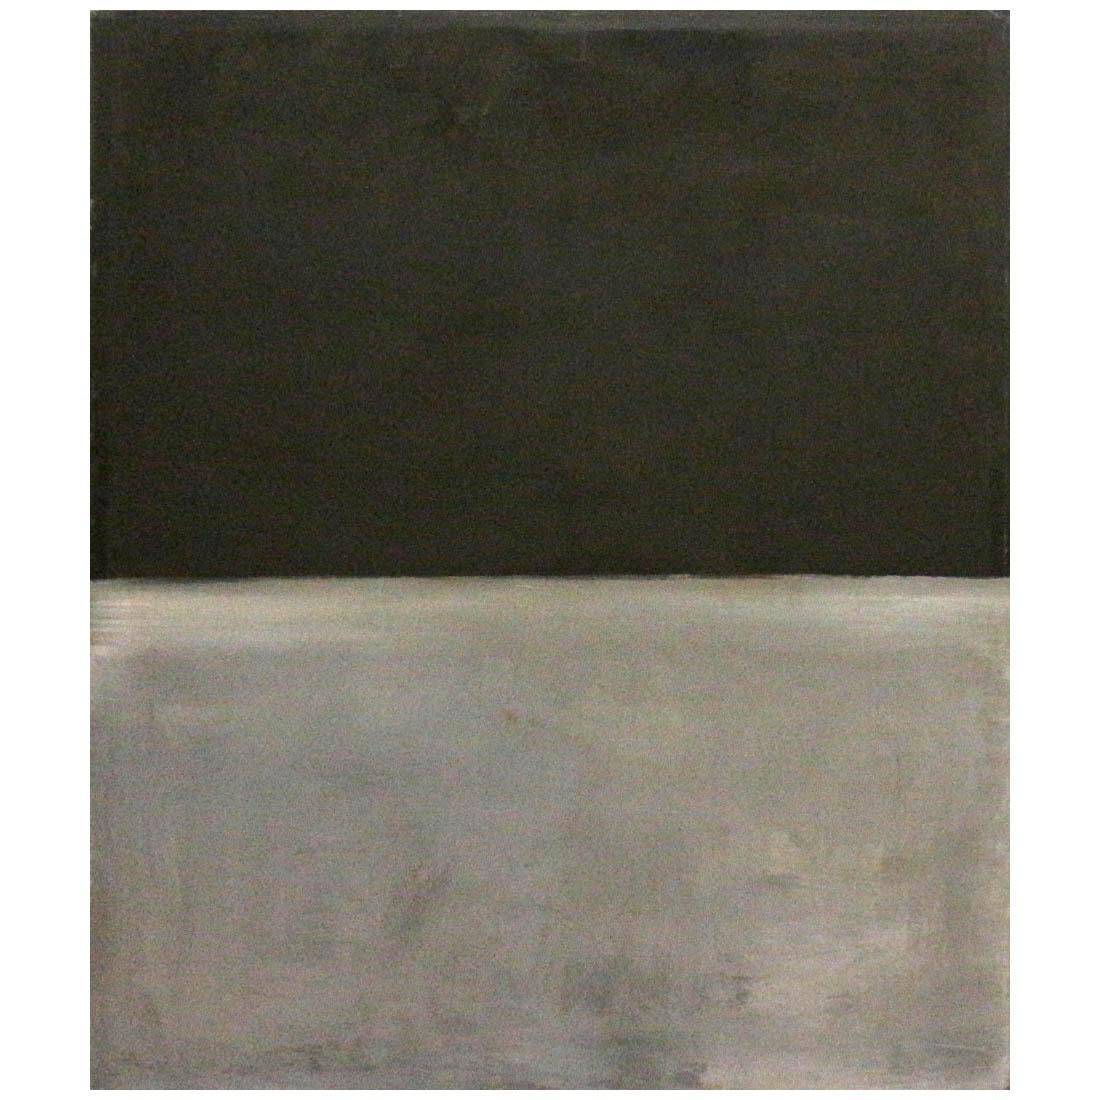 Mark Rothko. Untitled. Black, Gray. 1969